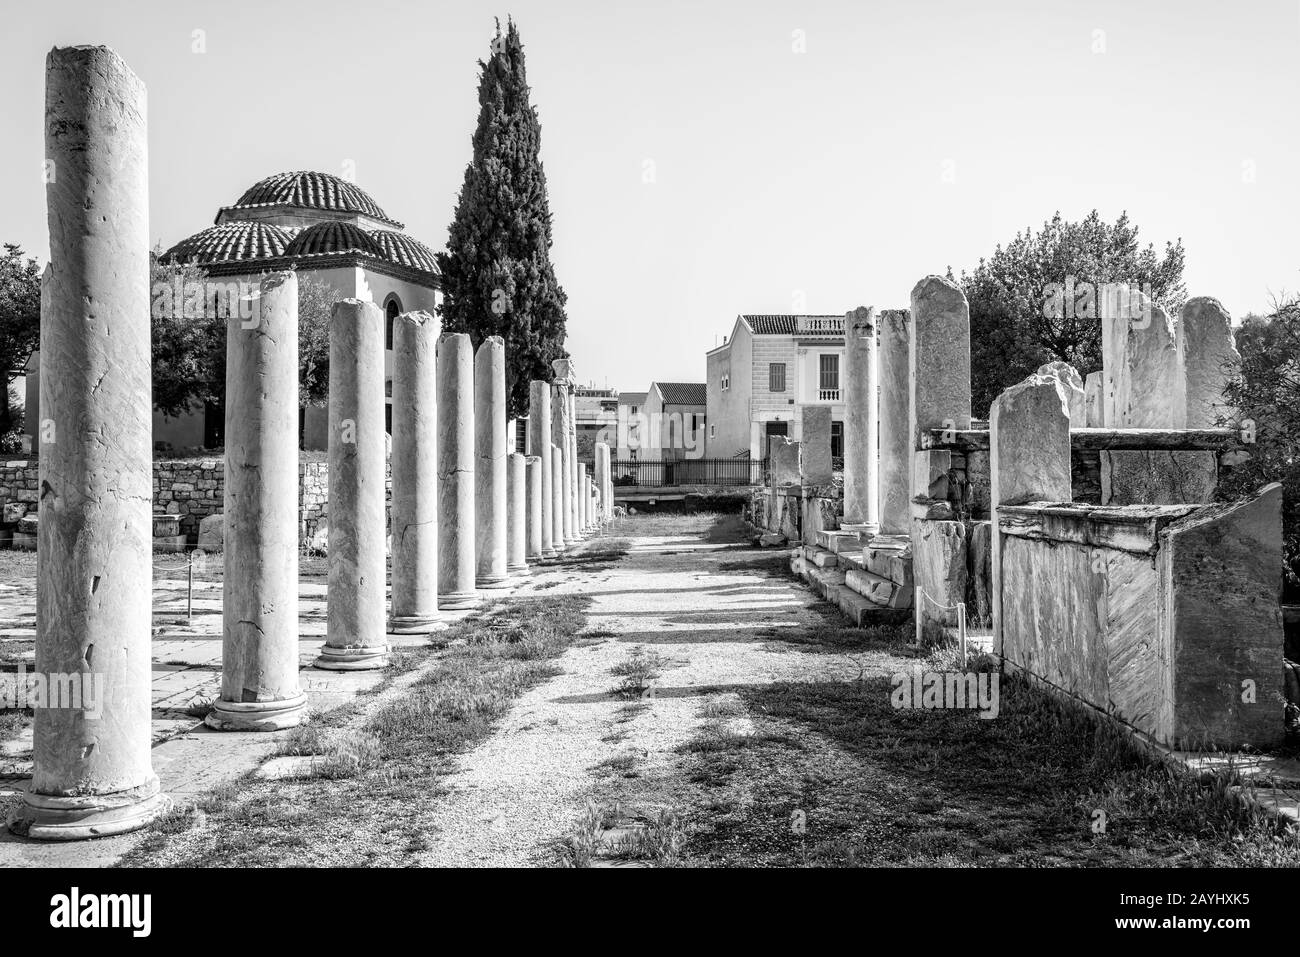 Agora romaine en noir et blanc, Athènes, Grèce. C'est l'un des principaux monuments d'Athènes. Paysage de ruines grecques anciennes dans le centre d'Athènes près de Plaka Banque D'Images